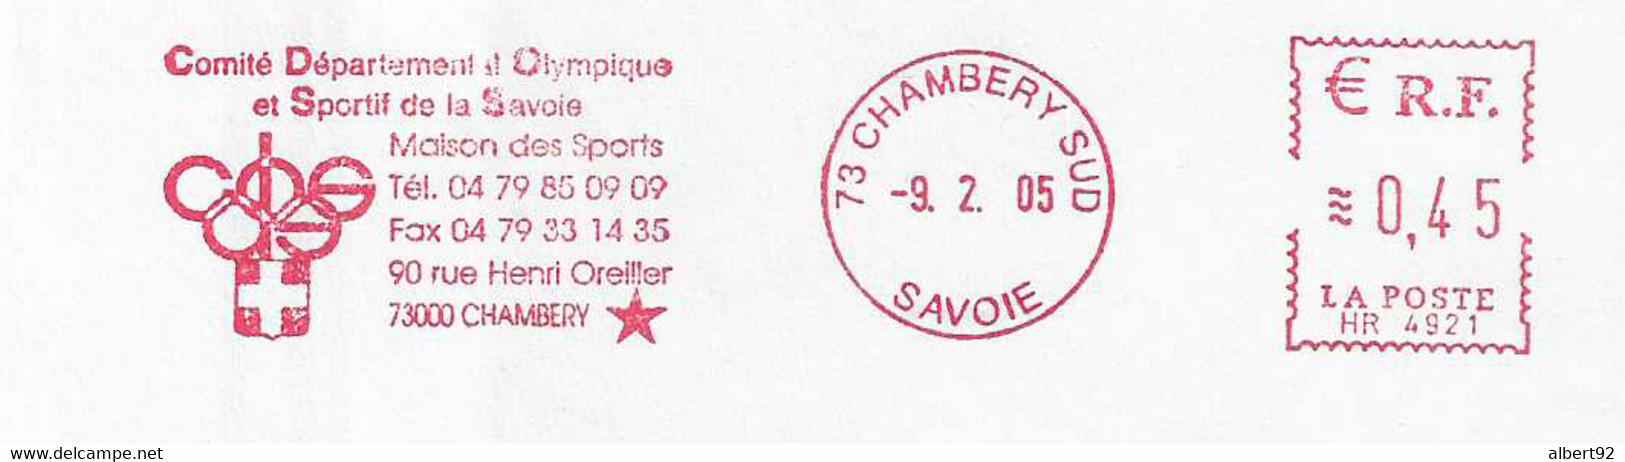 2005 EMA Du Comité Olympique De Savoie: Hommage à Henri Oreiller Médaillé D'or (descente Et Combiné) à St MORITZ 1948 - Hiver 1948: St-Moritz